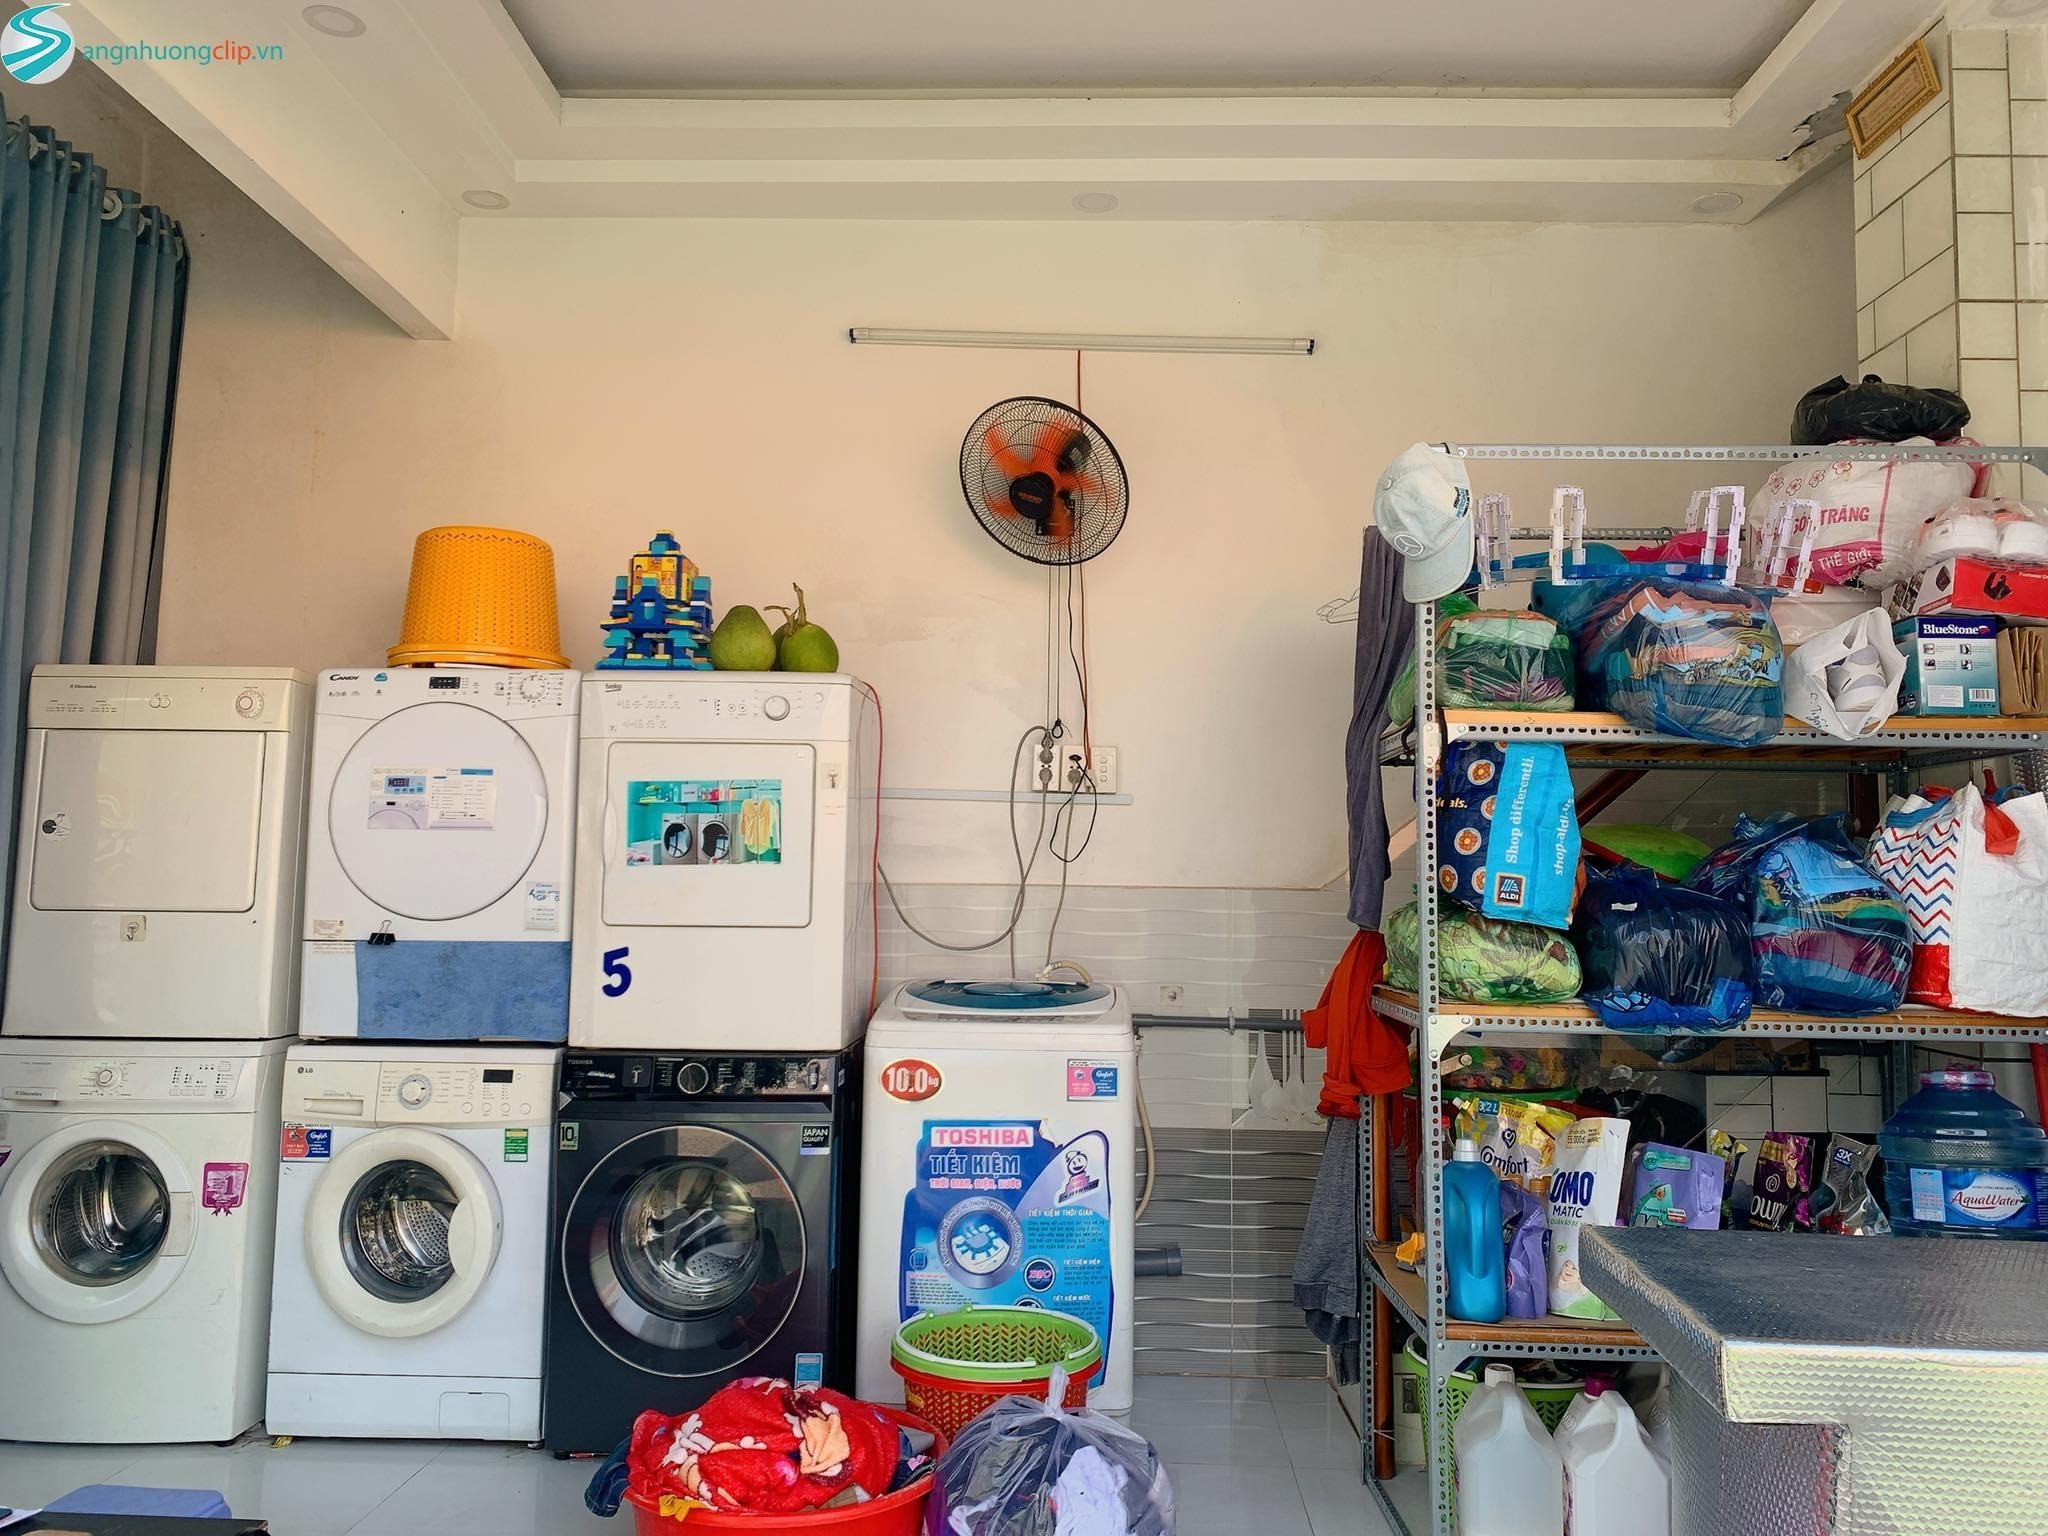 Dịch vụ giặt ủi quận 2 TP.HCM – Dịch vụ giao nhận 2 chiều